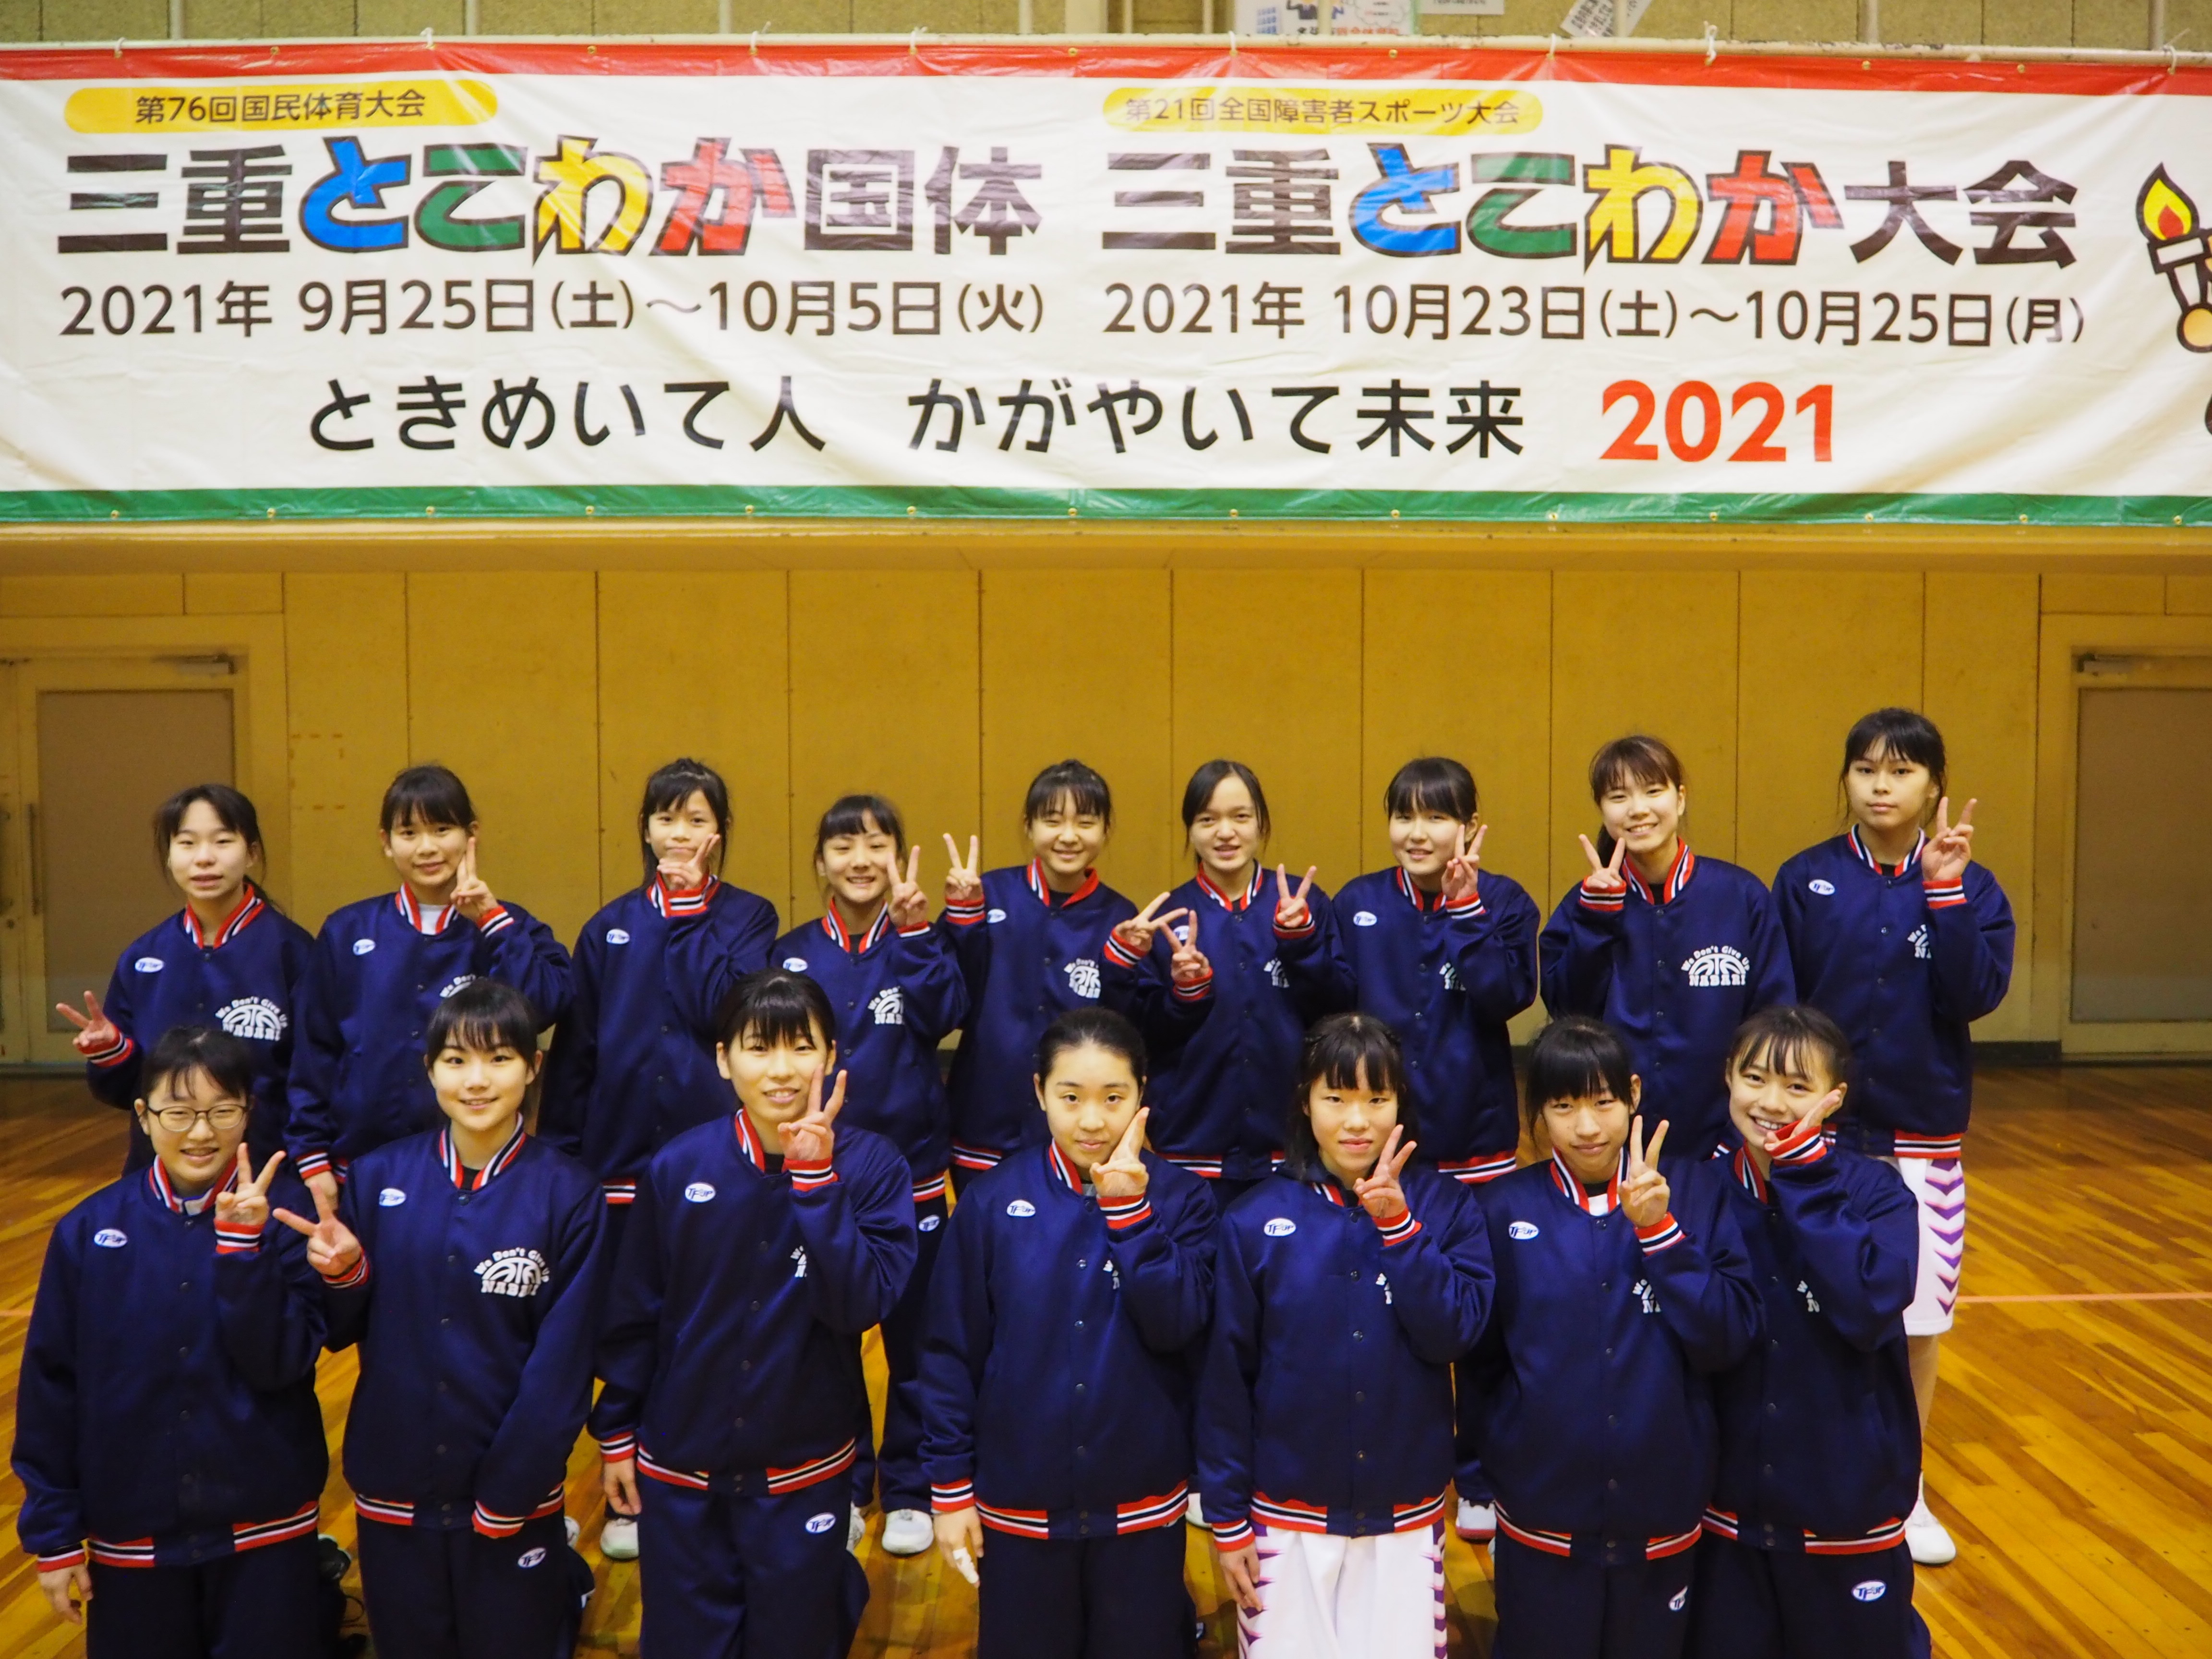 名張中学校女子バスケットボール部